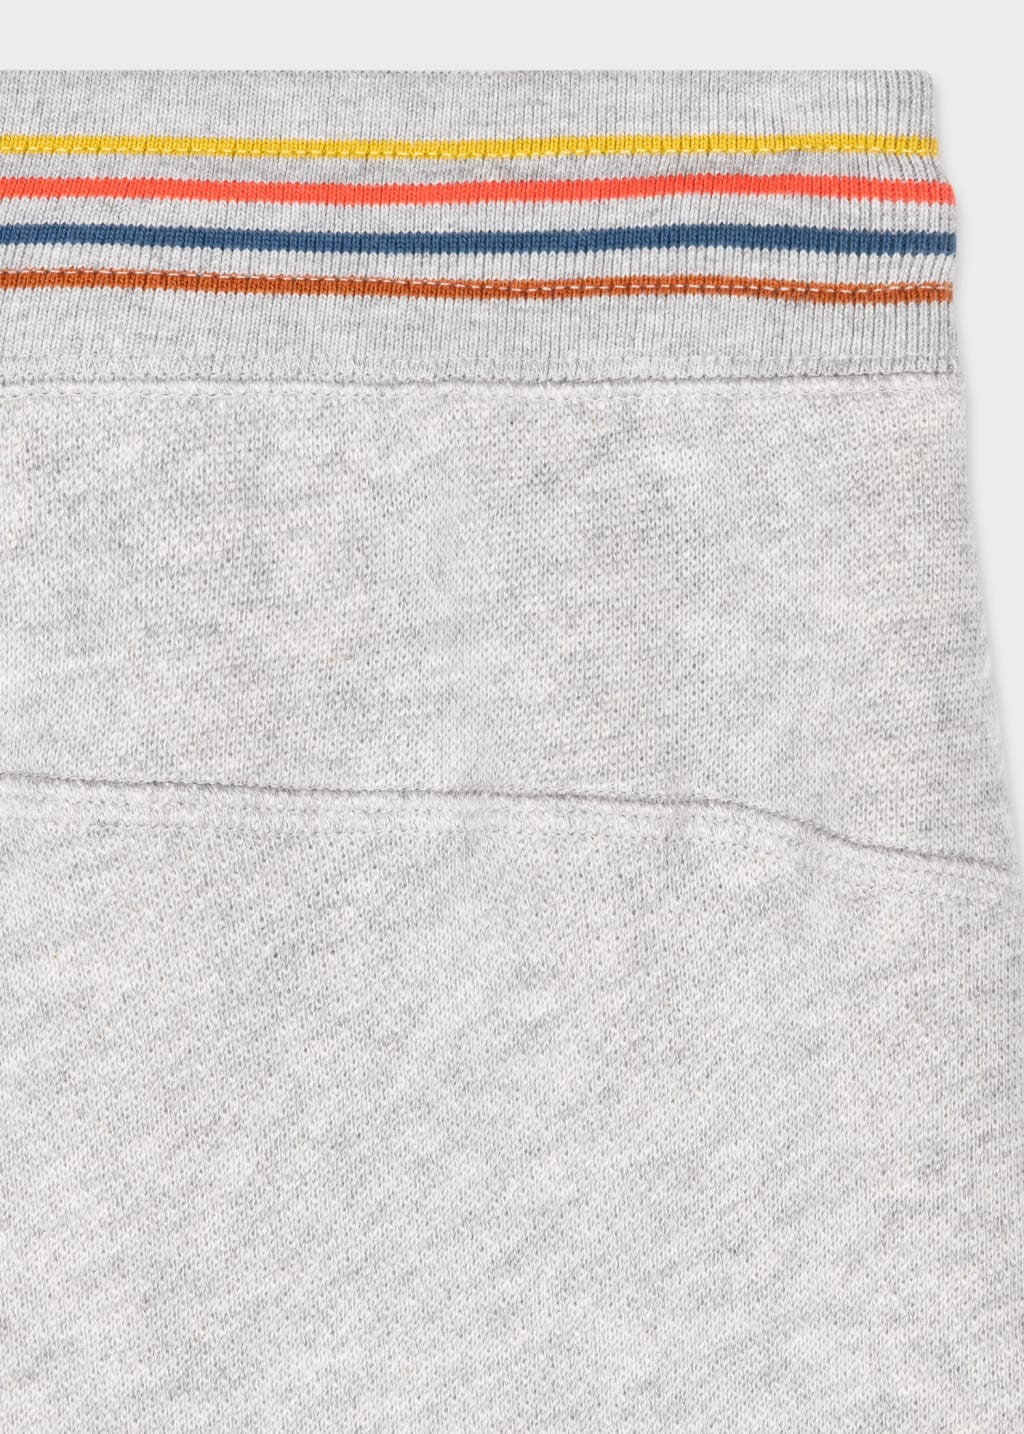 Detail View - Grey Cotton 'Artist Stripe' Lounge Pants Paul Smith